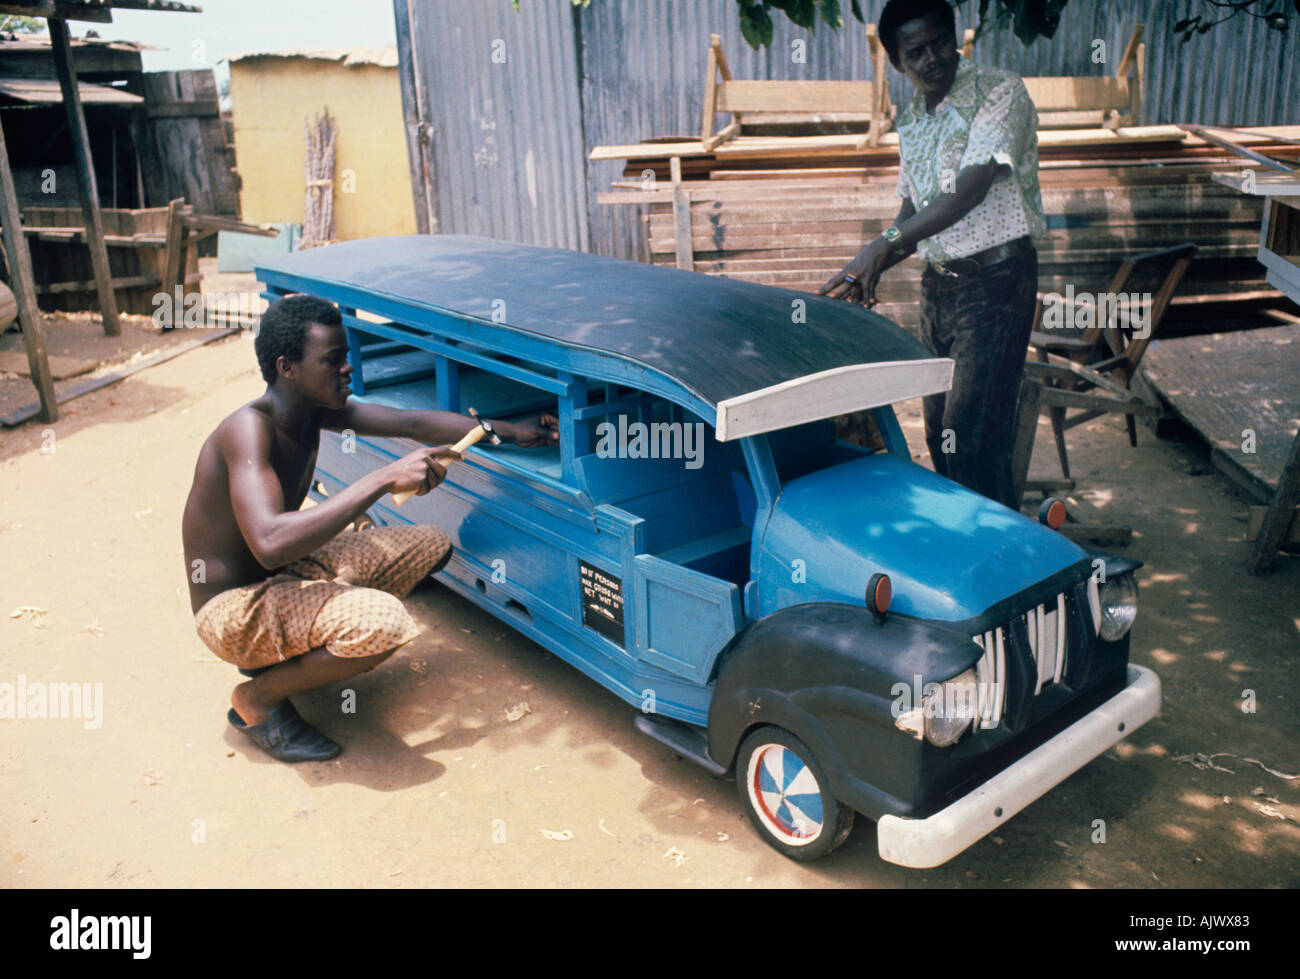 Les Ghanéens à la recherche d'un grand enterrement peuvent commander un magnifique cercueil personnalisé en forme d'autobus, un oiseau, un bateau, ou tout dernier souhait Banque D'Images